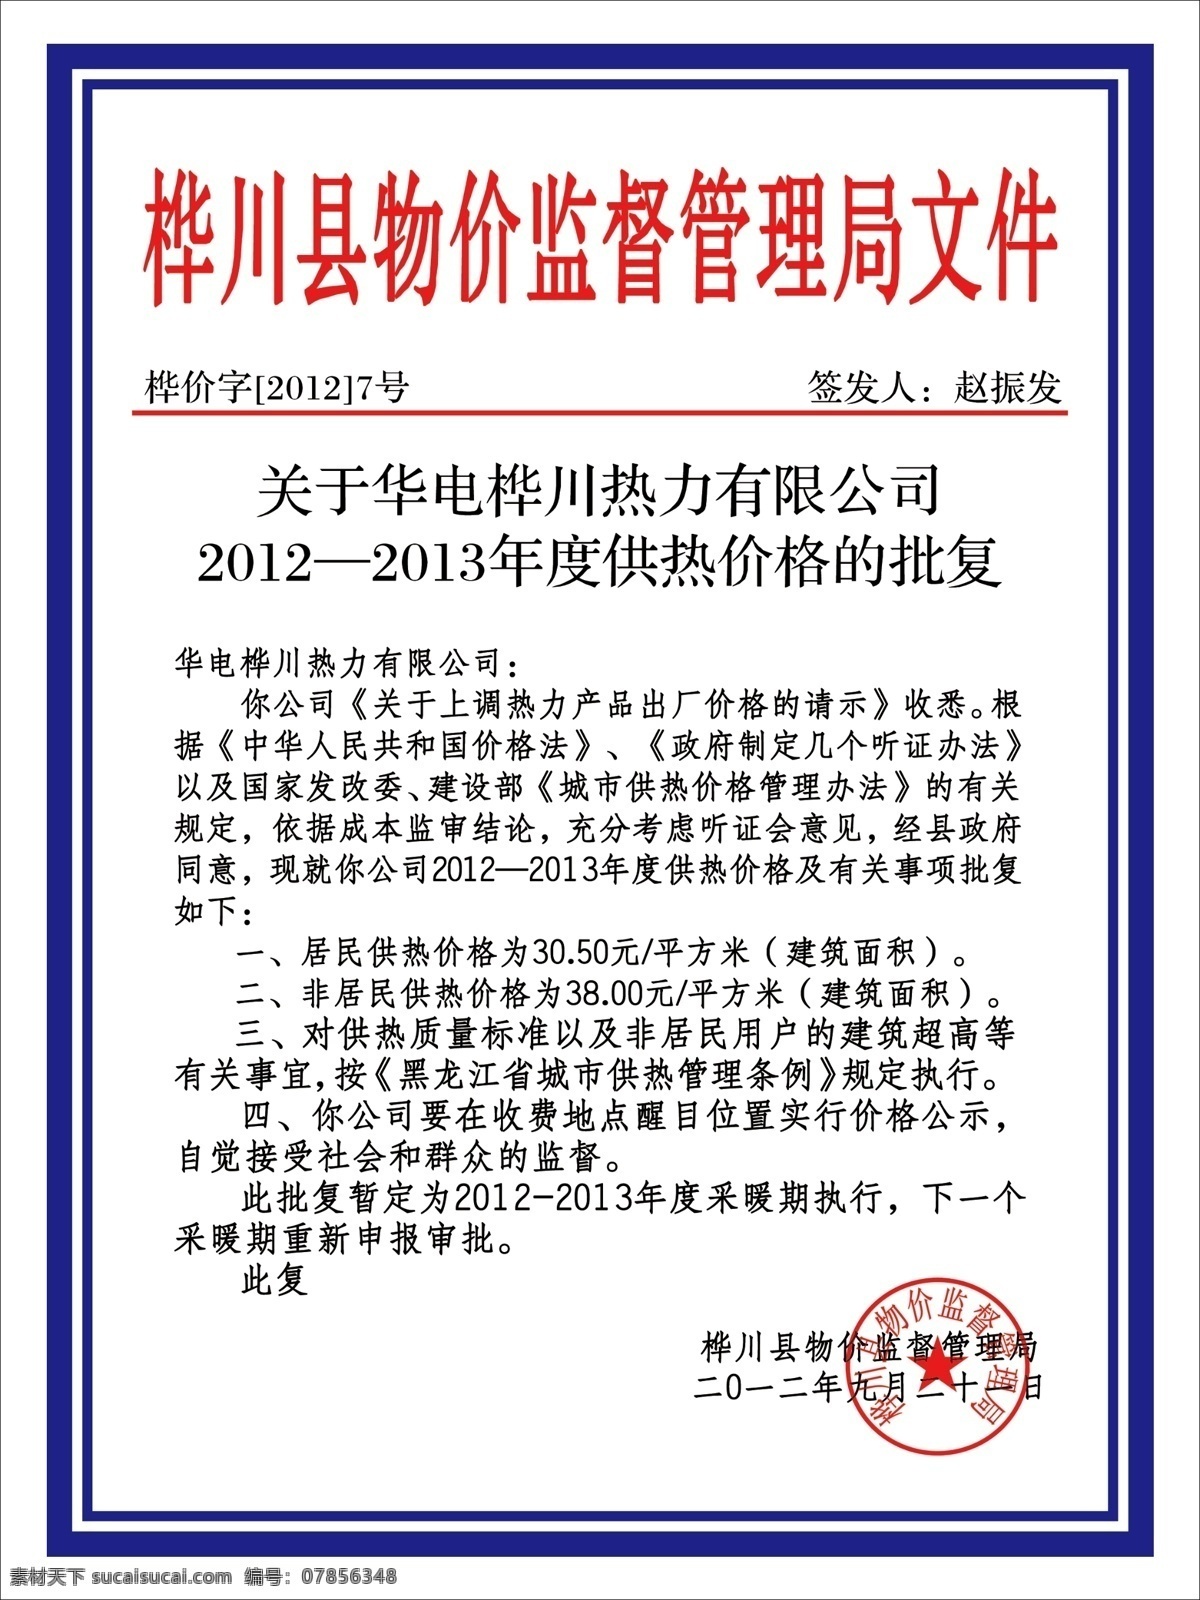 桦川县 物价 监督 管理局 文件 红头文件 物价局 监督管理 章 广告设计模板 源文件